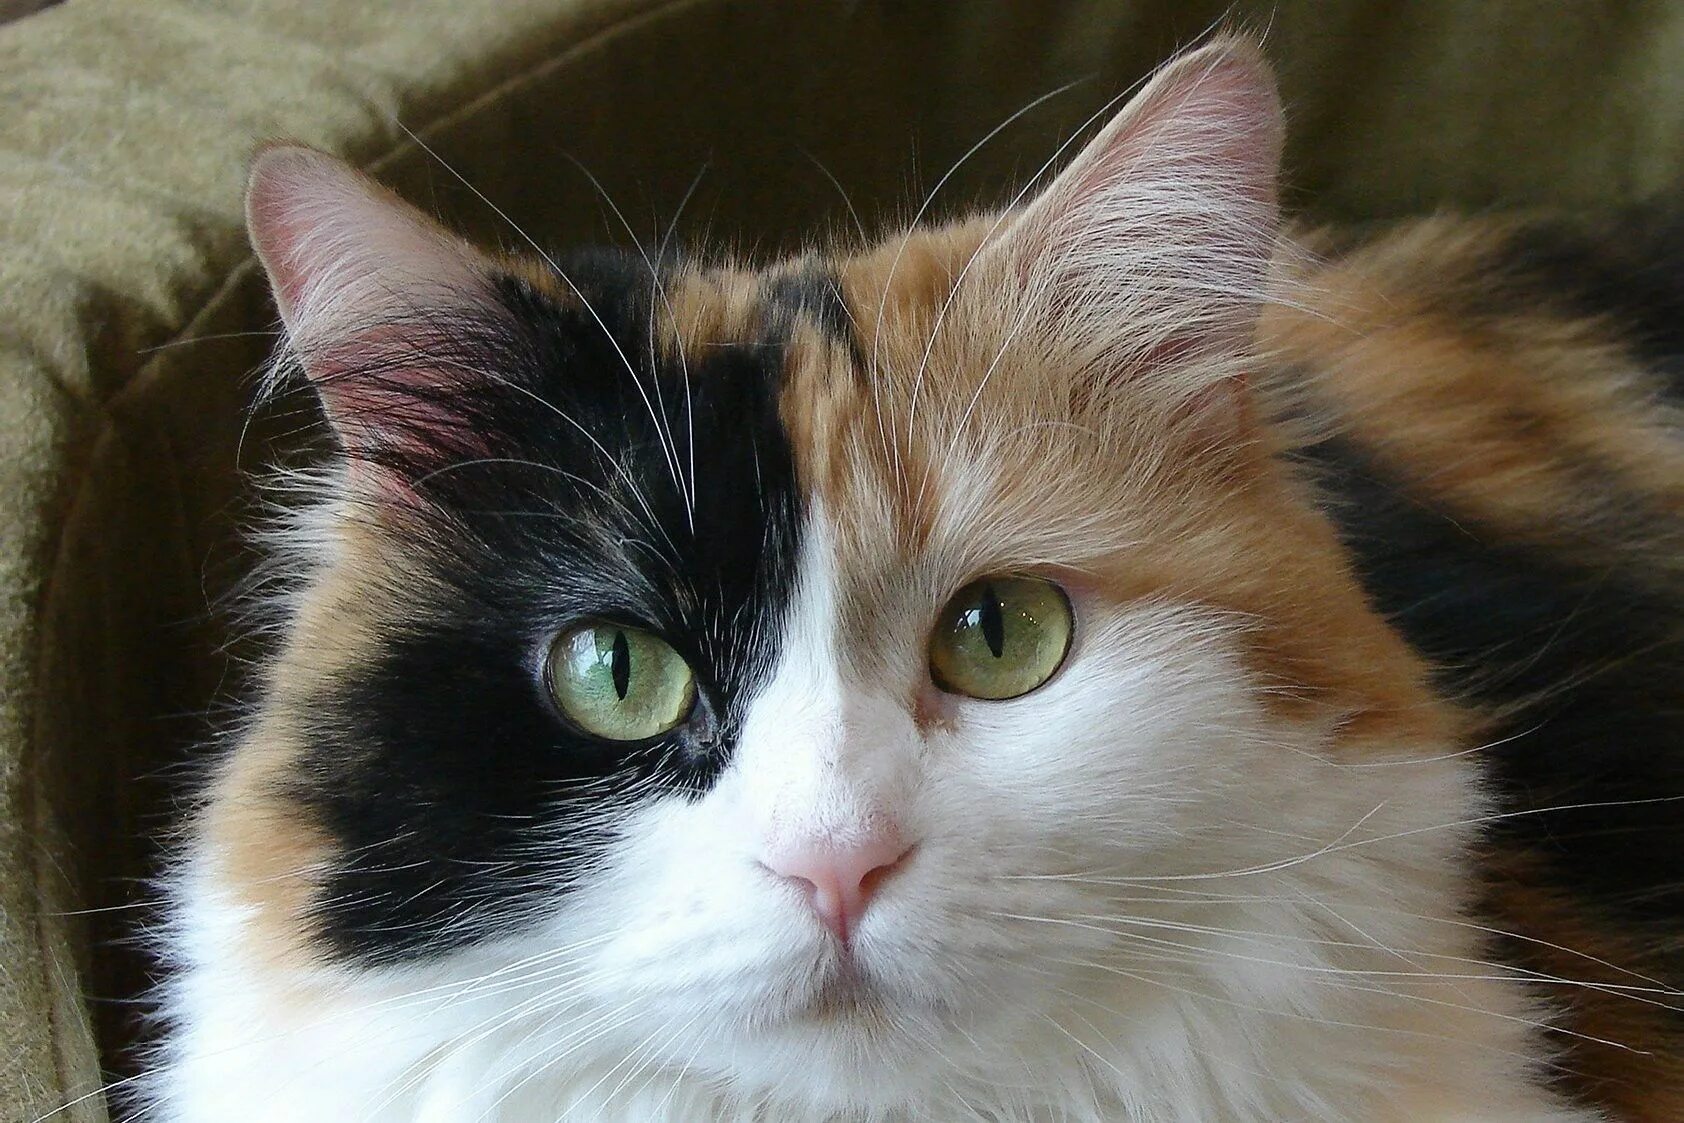 Сибирская ангорская кошка трёхцветная. Сибирская Калико кошка. Трехцветная кошка богатка. Трёхцветная кошка Мейн кун. Порода черная с рыжими пятнами